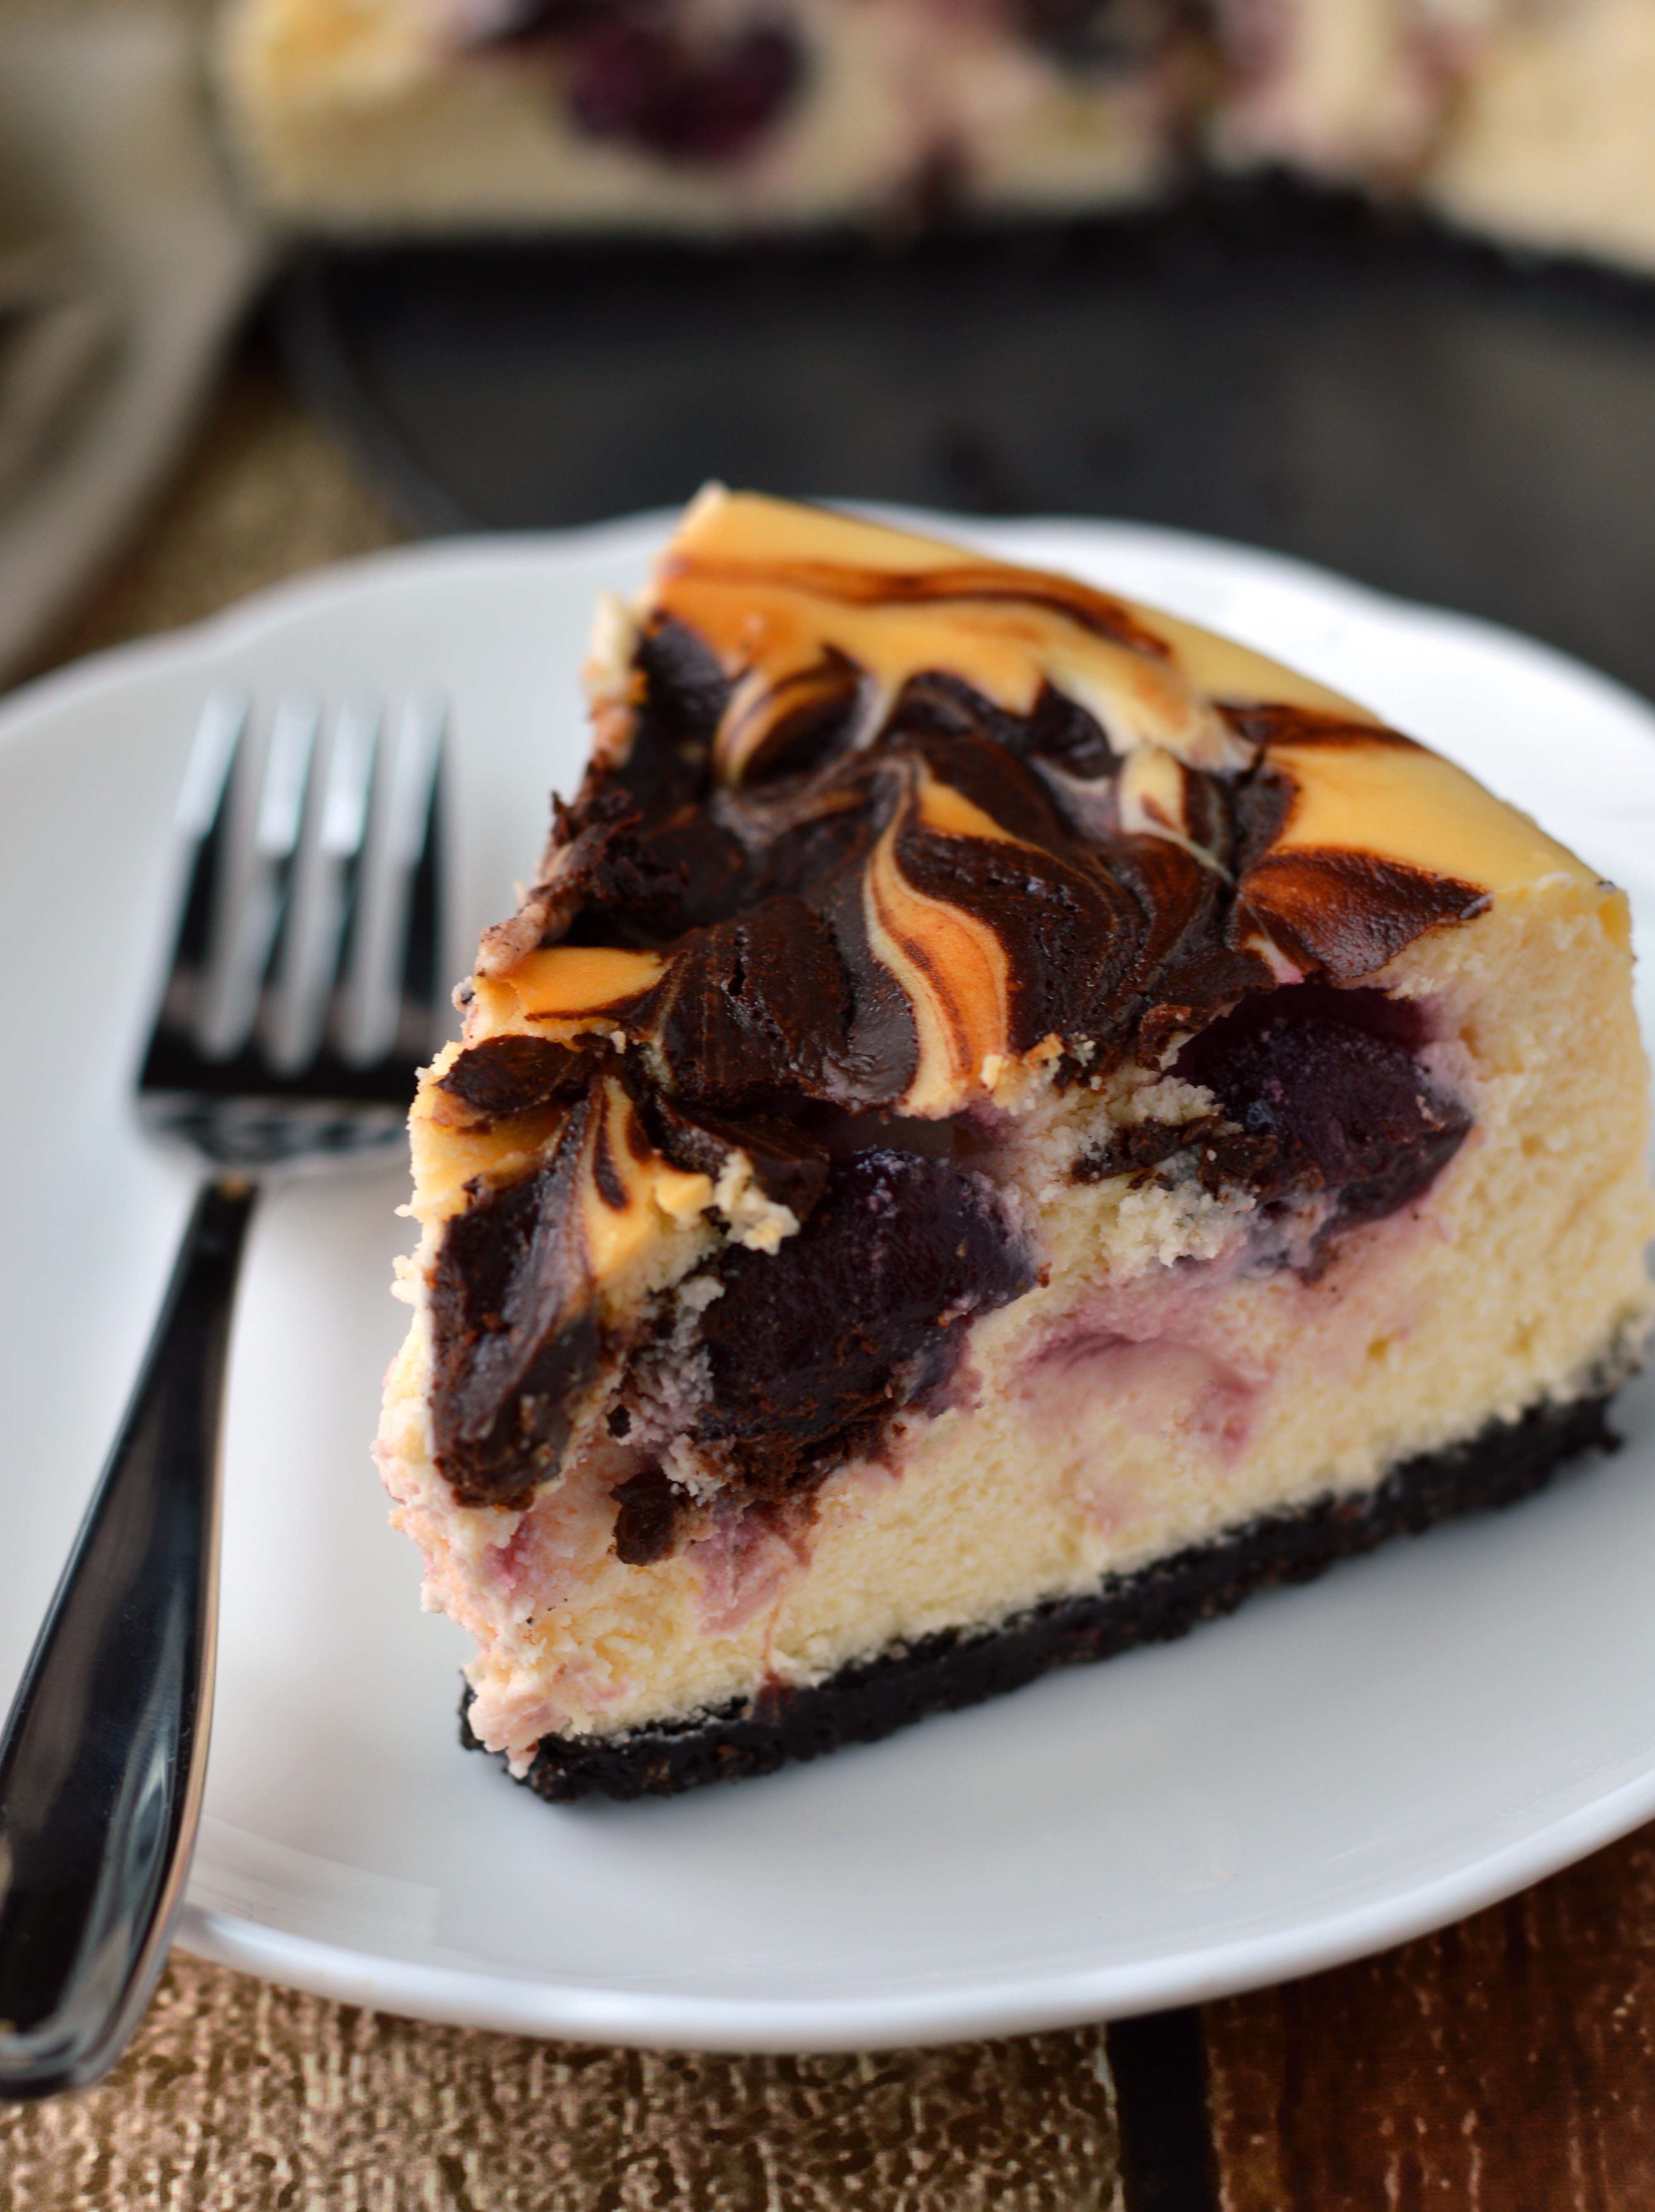 Chocolate covered cherry cheesecake - Friday is Cake Night